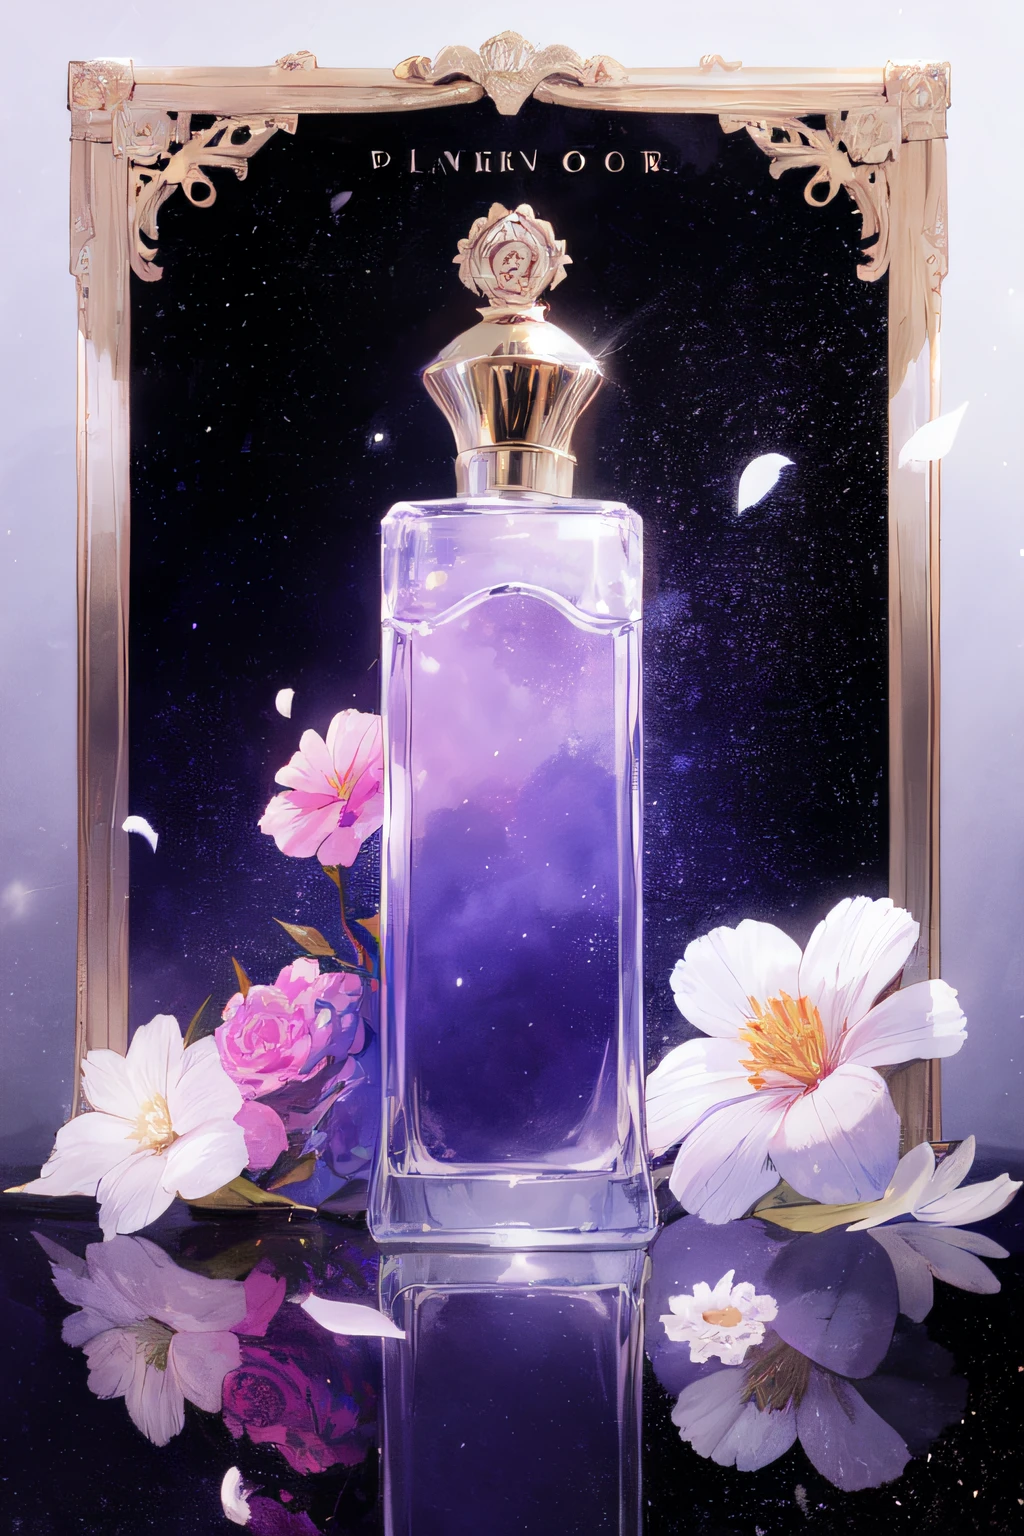 没有人类, 香水瓶, 粉红色的花, 白色的花, 宇宙, 紫色主题, 黑色背景